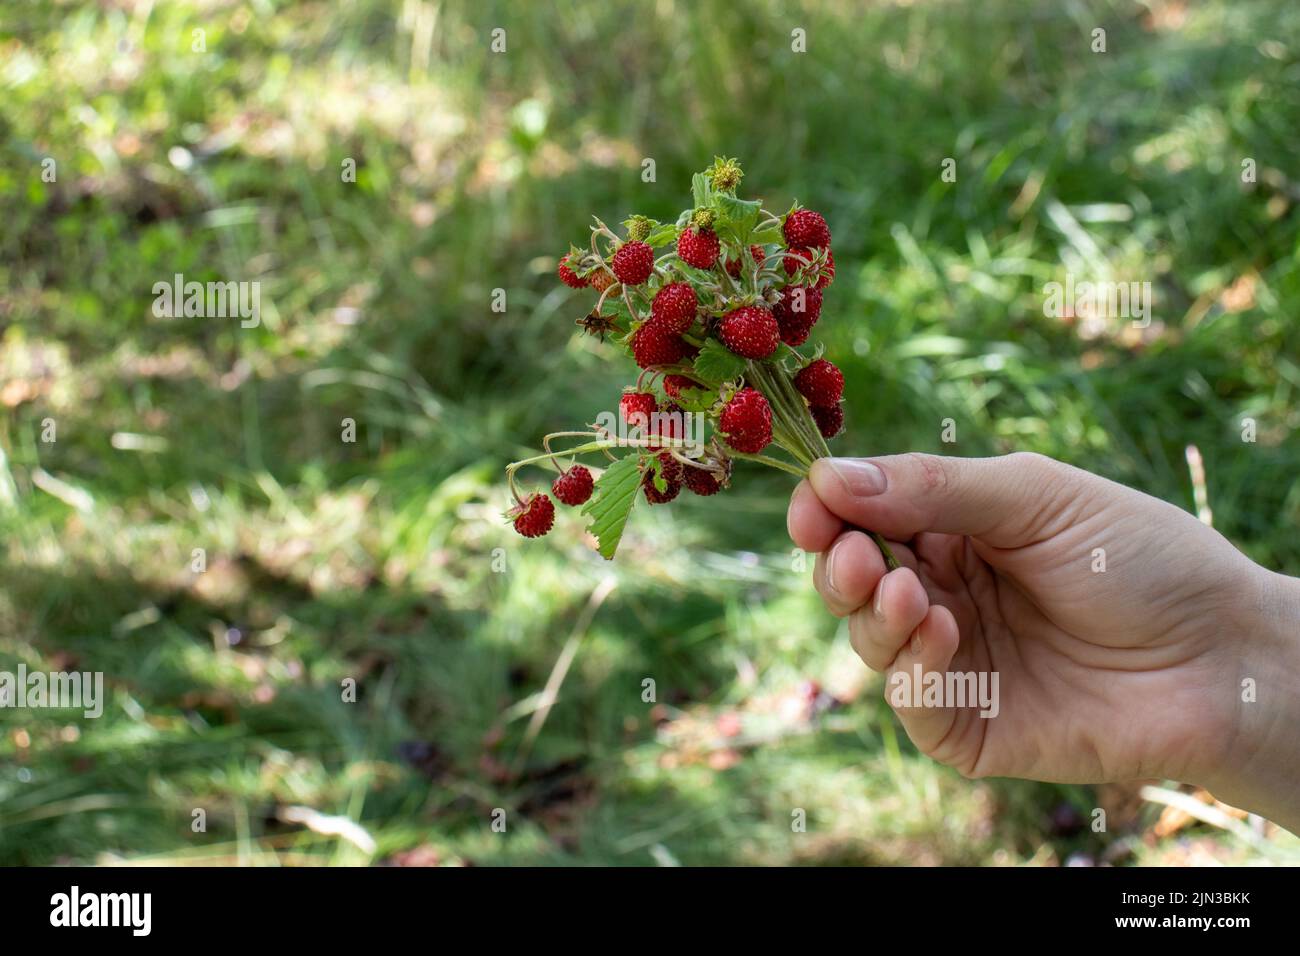 Petites fraises sauvages sur le Bush dans la main femelle sur fond d'herbe verte. Femme tenant des baies rouges. Style de vie d'été. Cueillette de petites fraises Banque D'Images